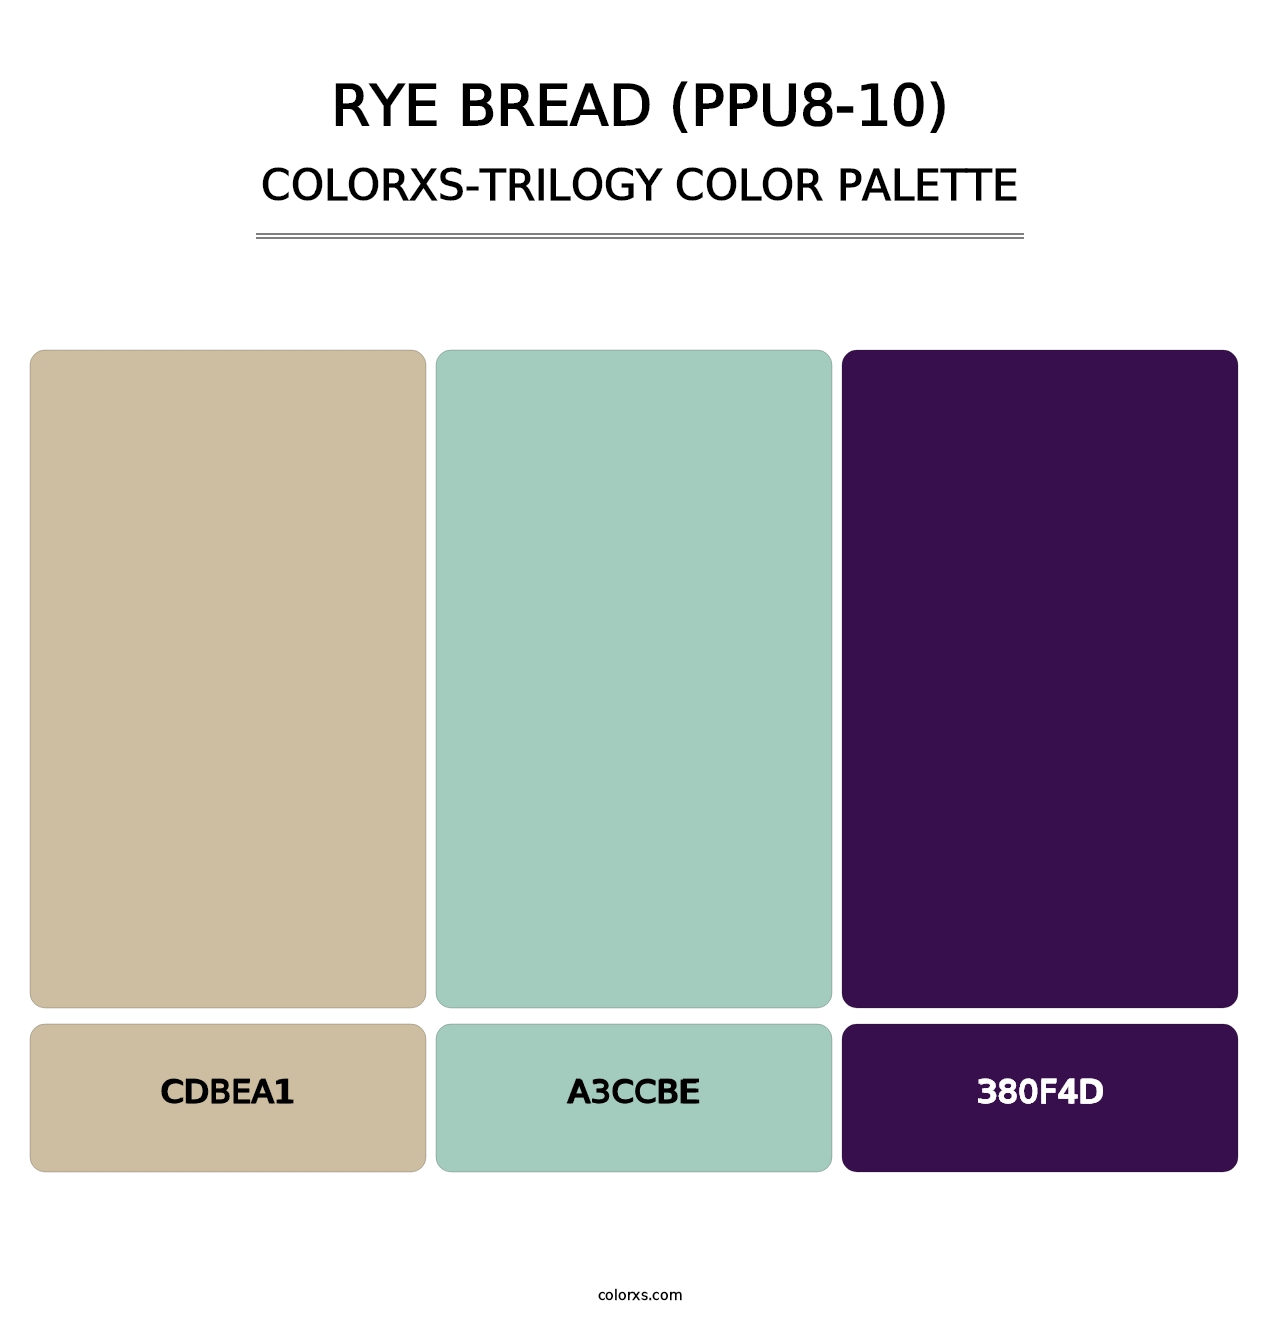 Rye Bread (PPU8-10) - Colorxs Trilogy Palette